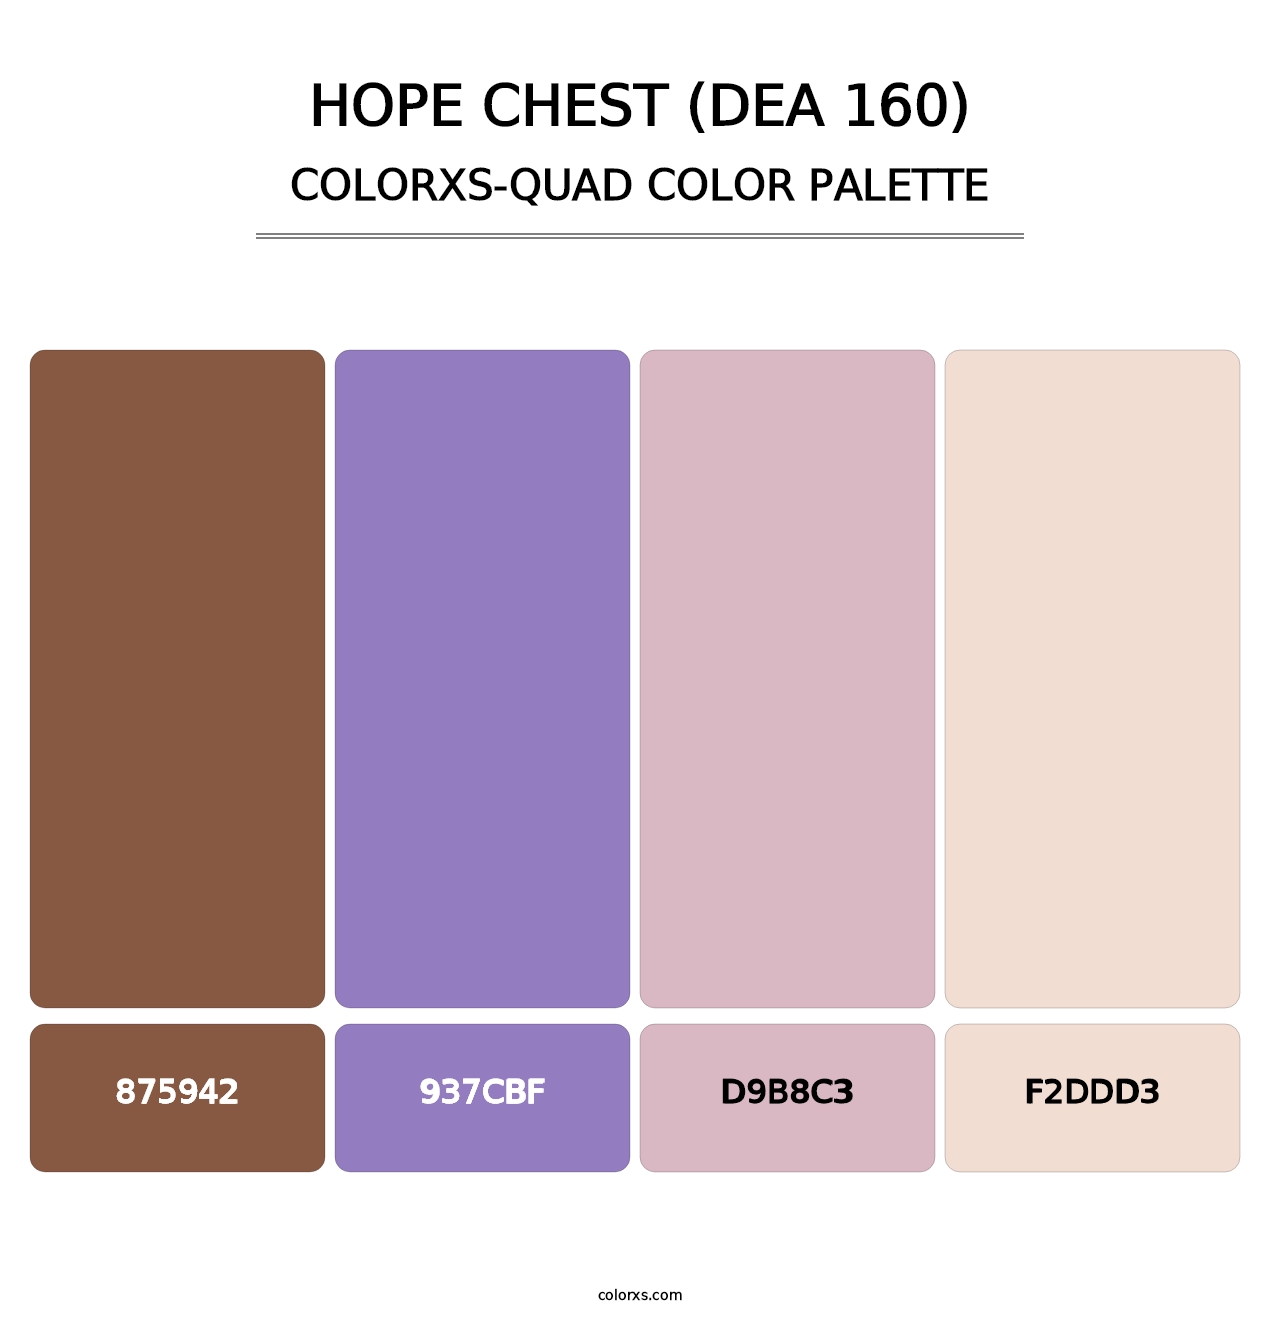 Hope Chest (DEA 160) - Colorxs Quad Palette